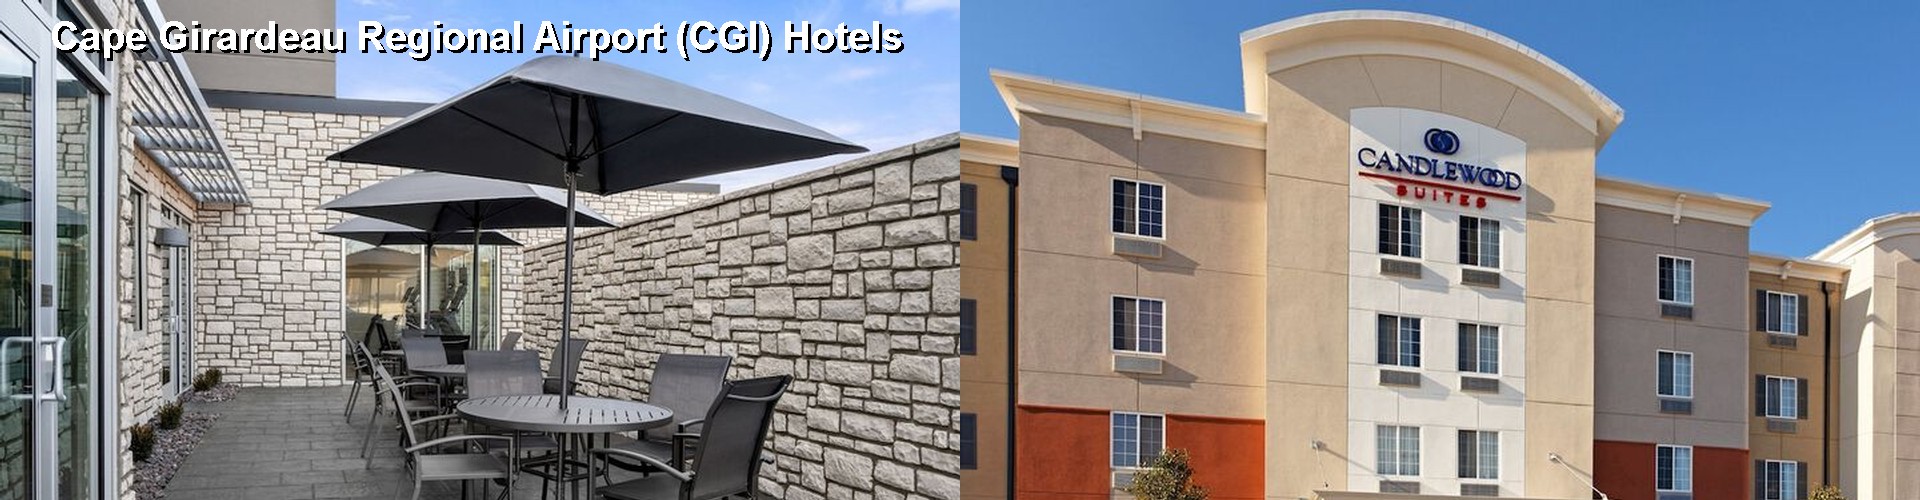 5 Best Hotels near Cape Girardeau Regional Airport (CGI)